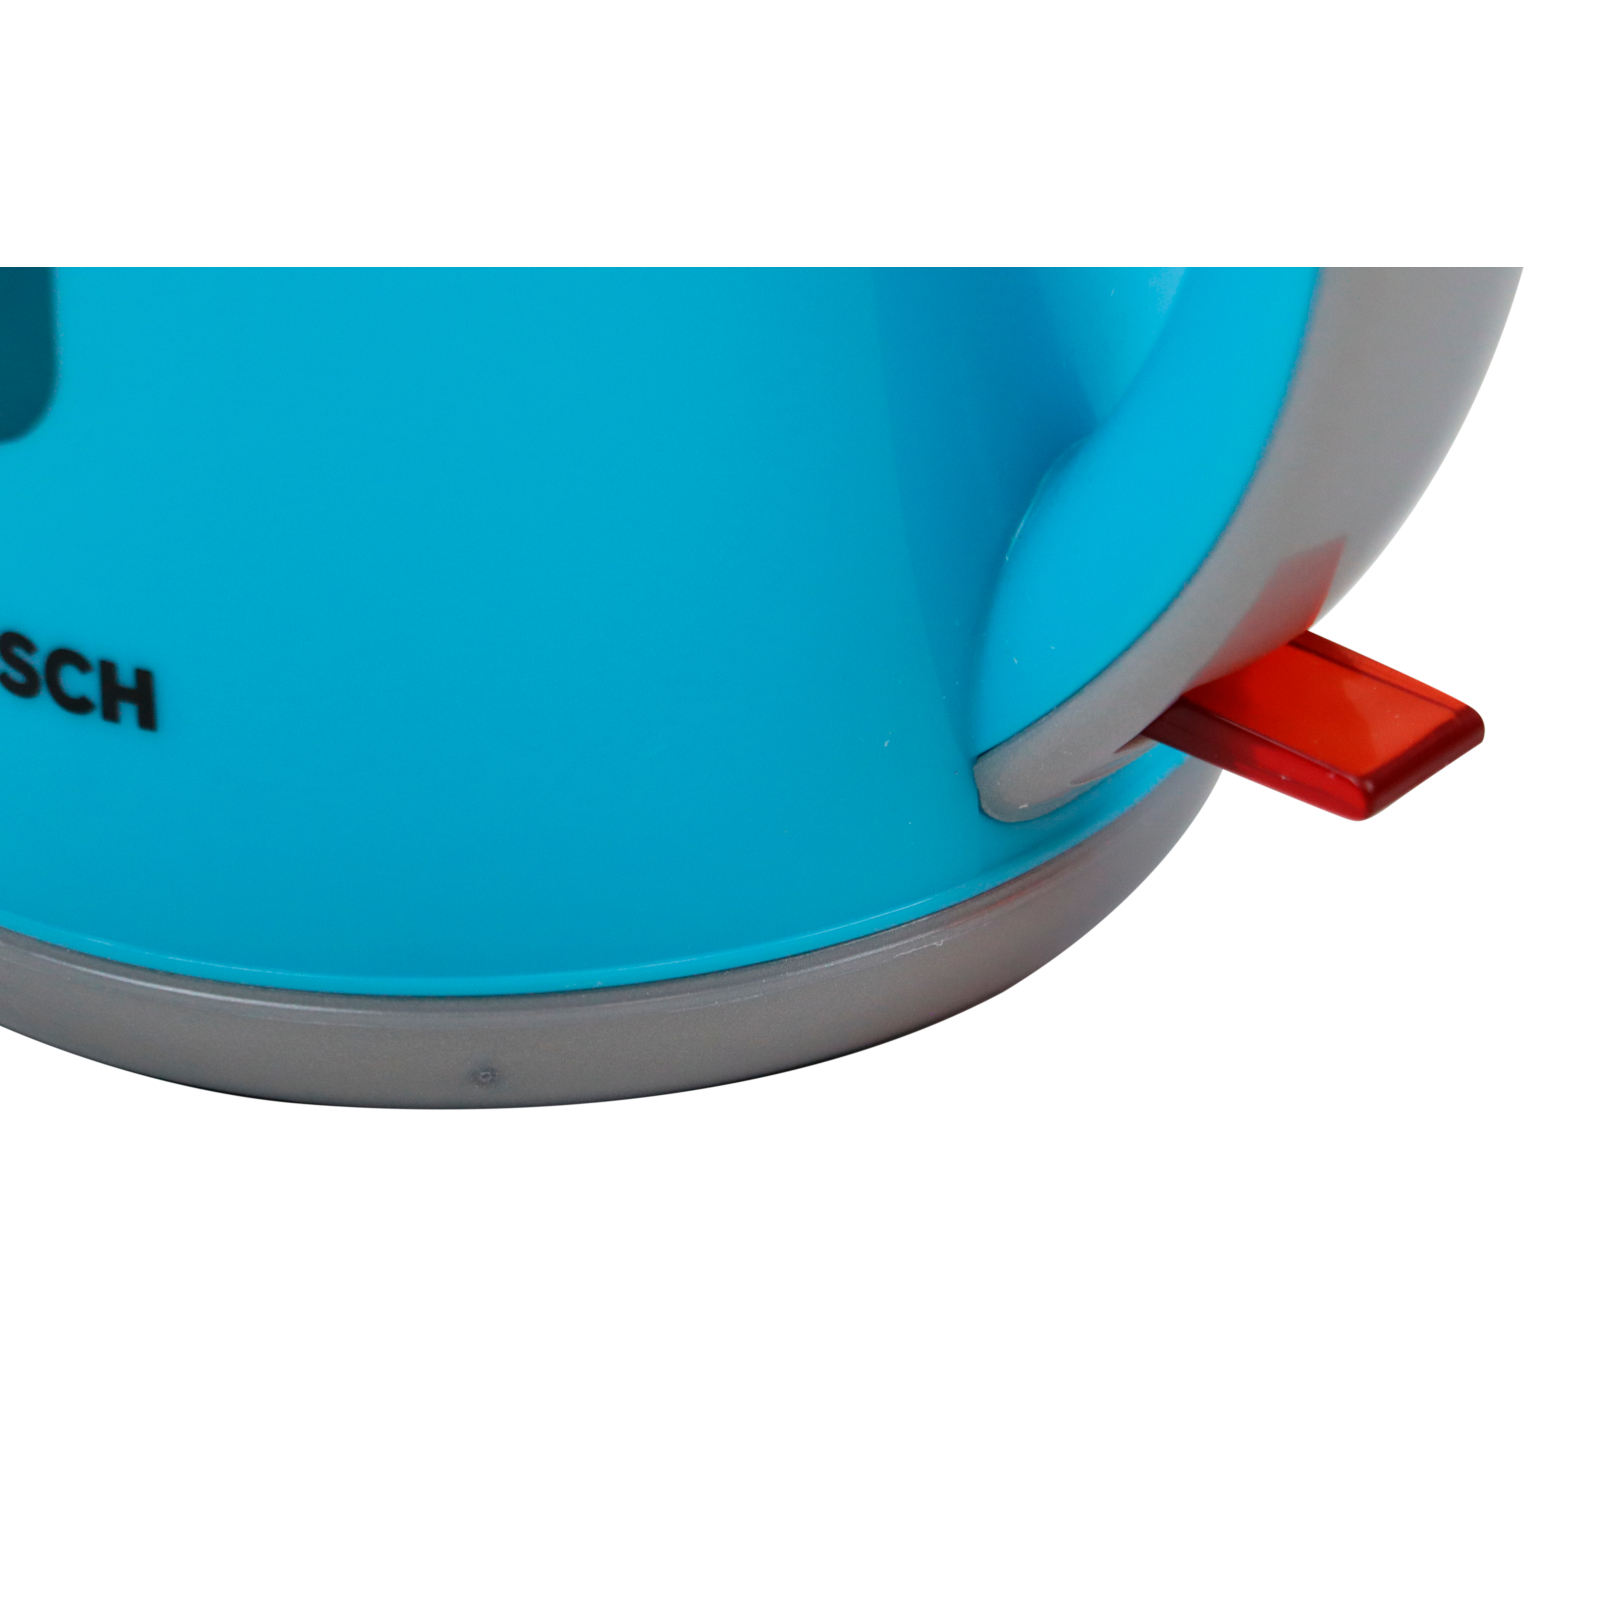 Игровой набор Bosch Чайник бирюзовый (9539) изображение 4